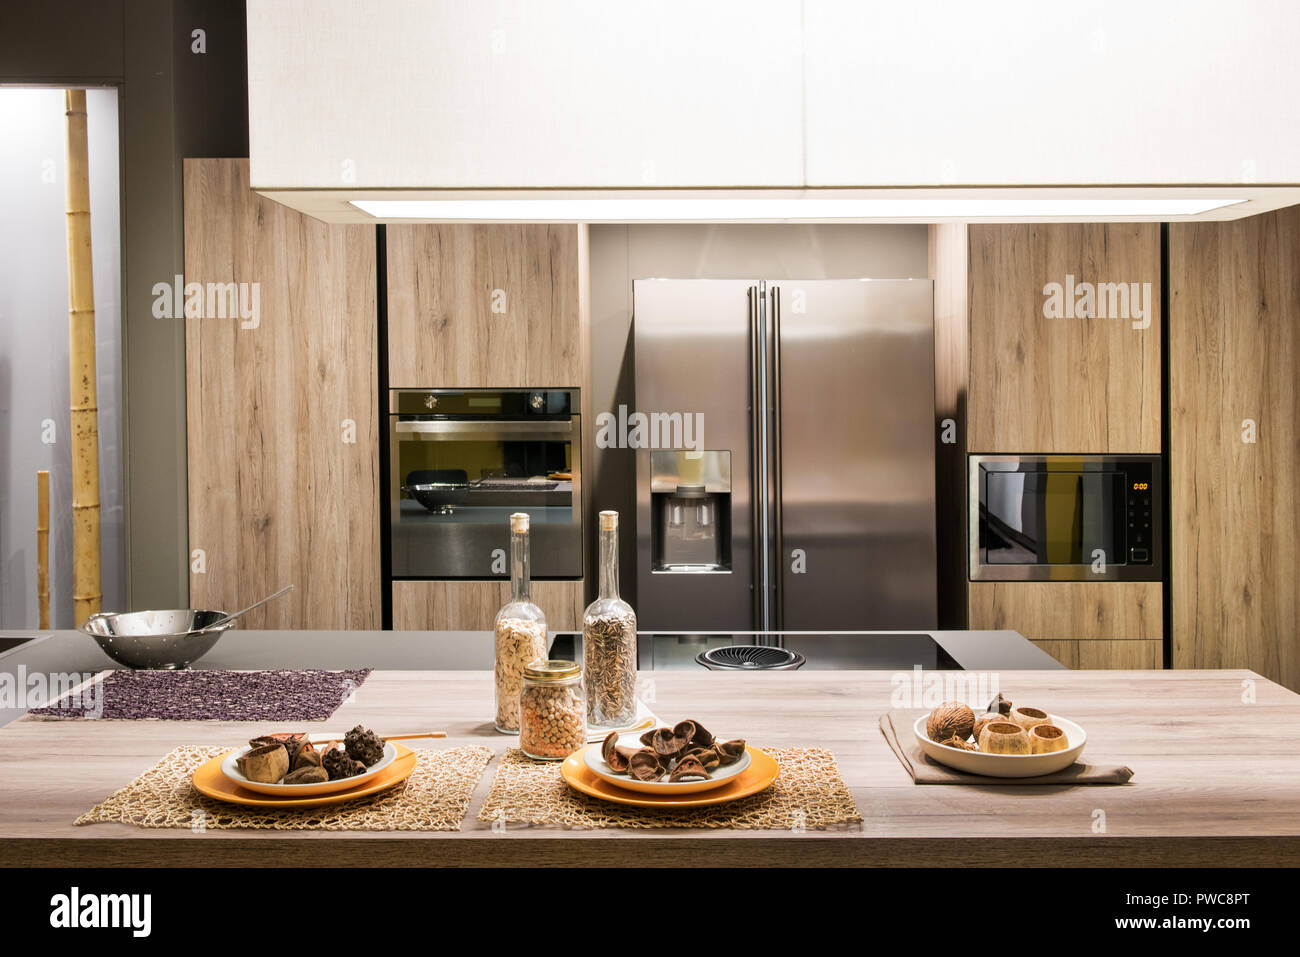 Cuisine équipée moderne avec intérieur en bois et les appareils et plaques de biscuits fraîchement cuits au four sur un centre de table Banque D'Images